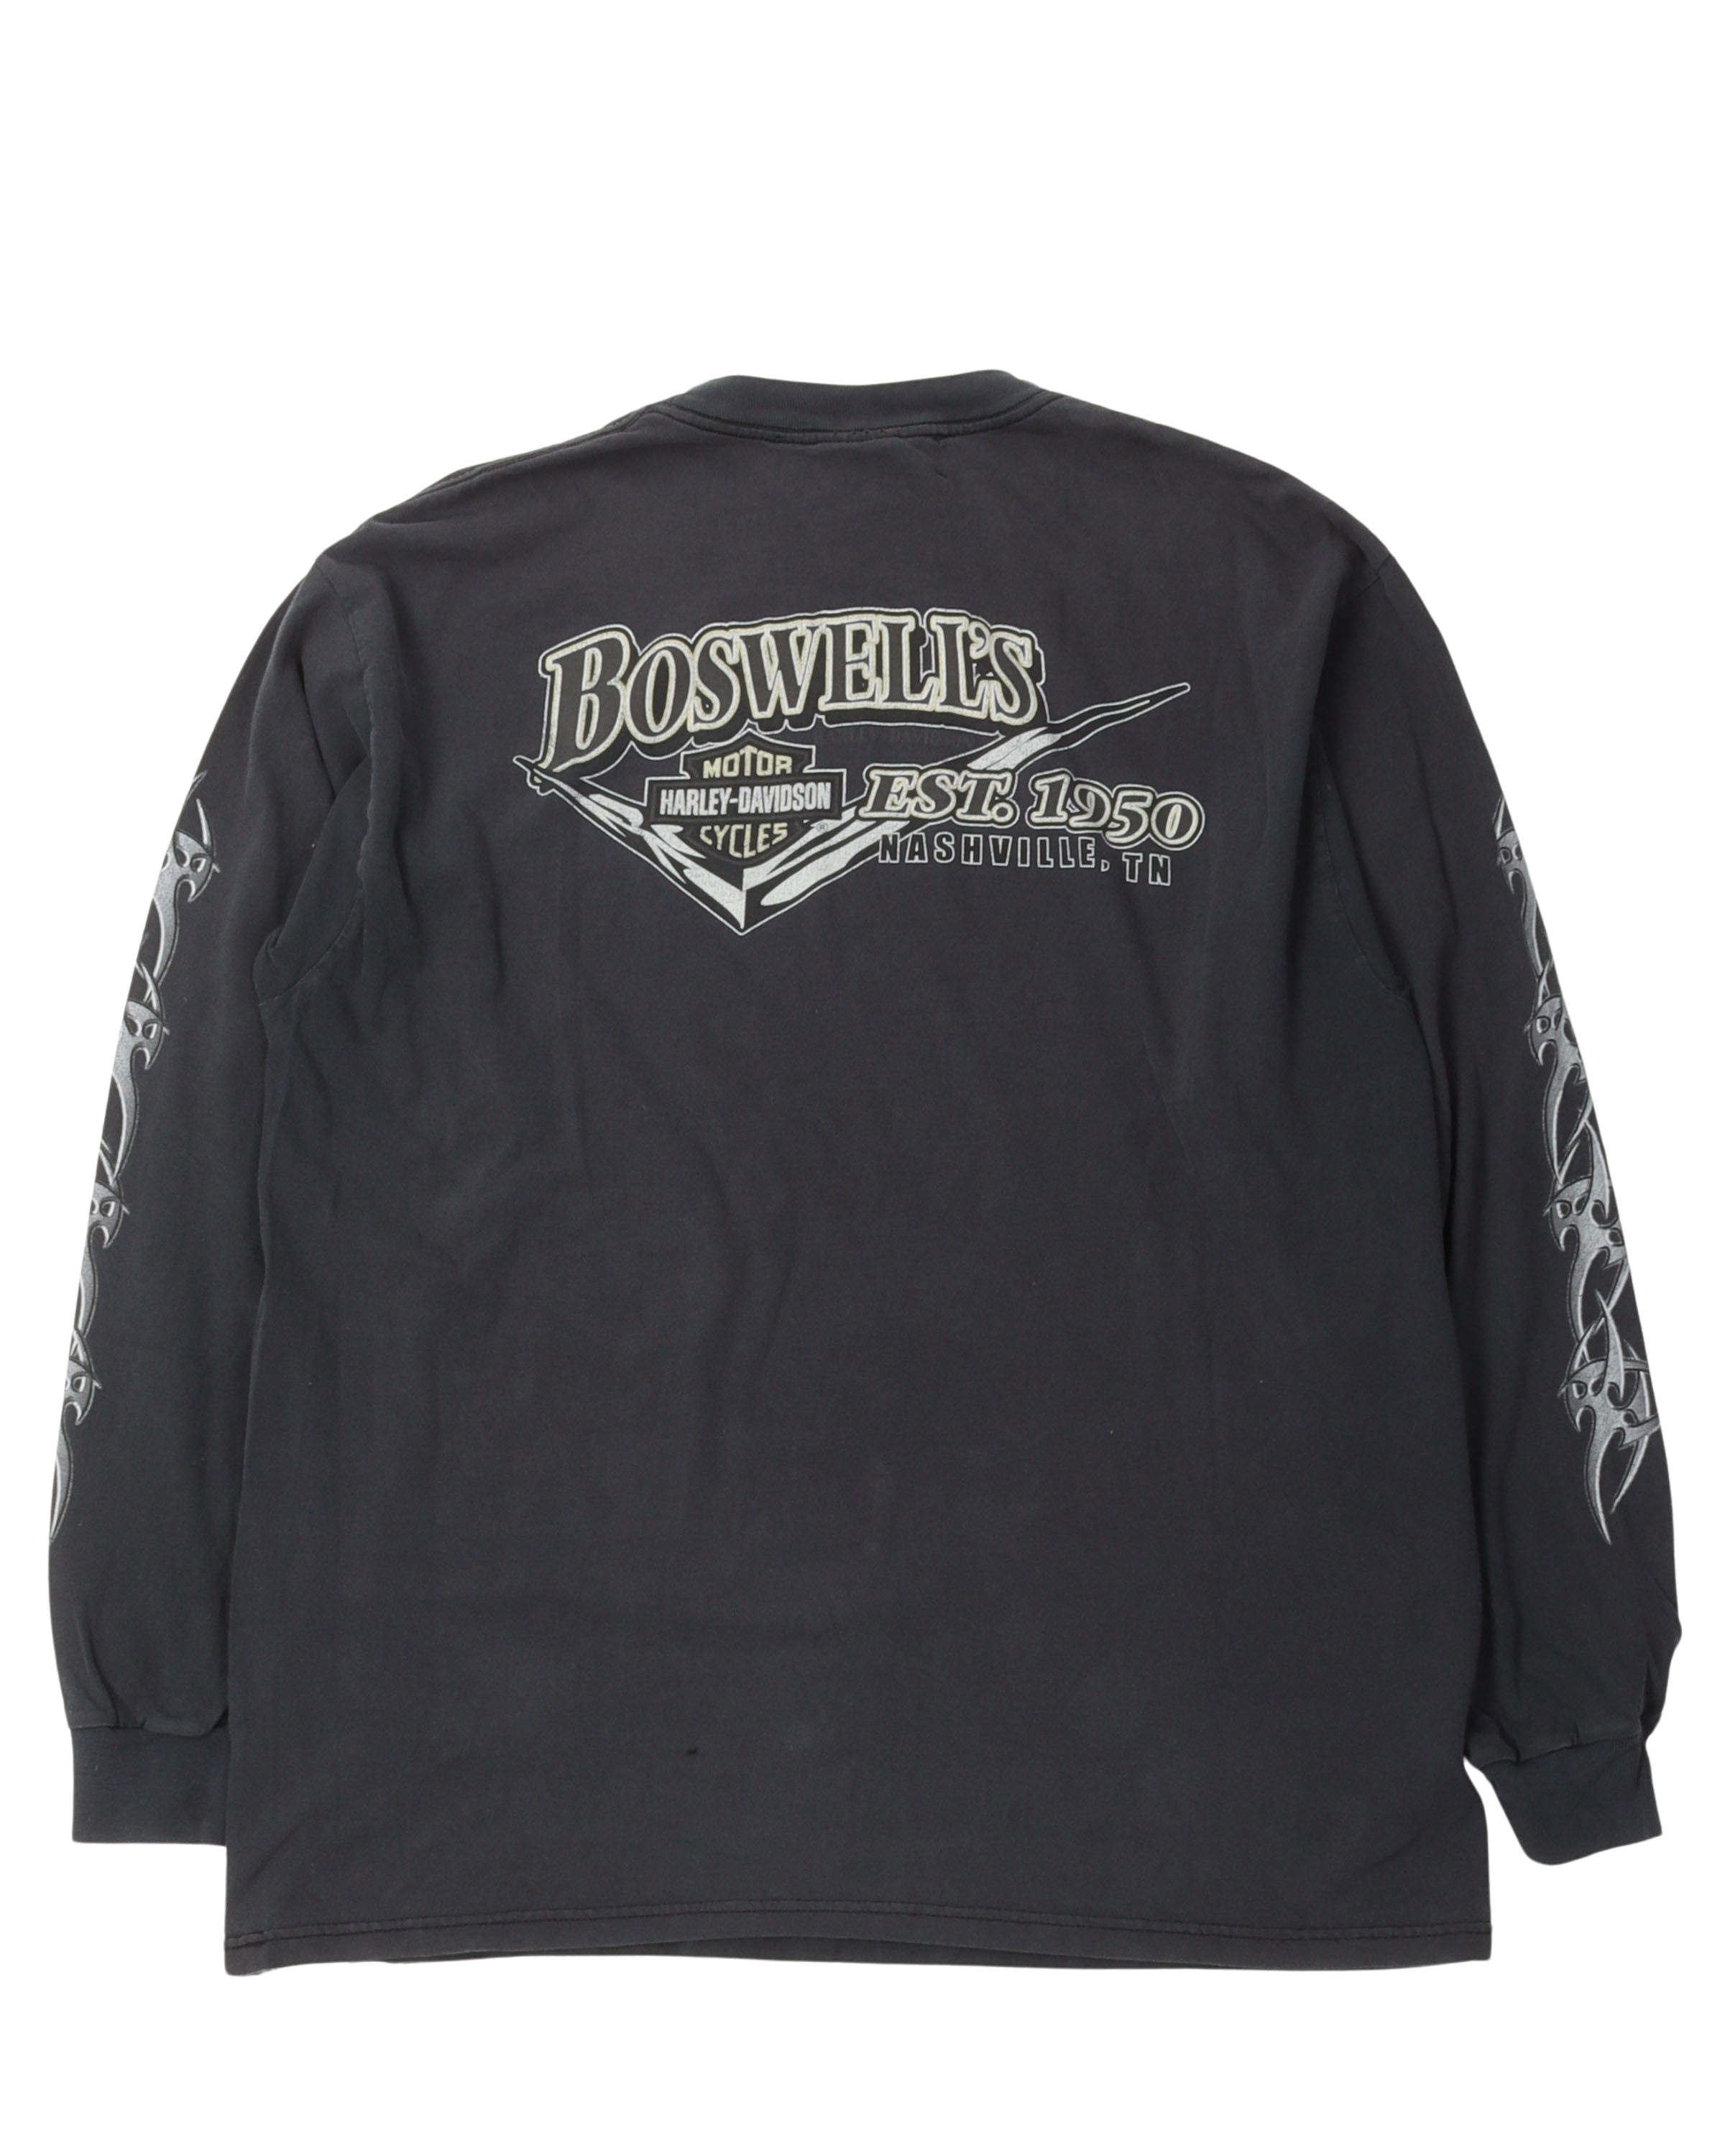 Vintage Harley Davidson Metallic Logo Long Sleeve T-Shirt